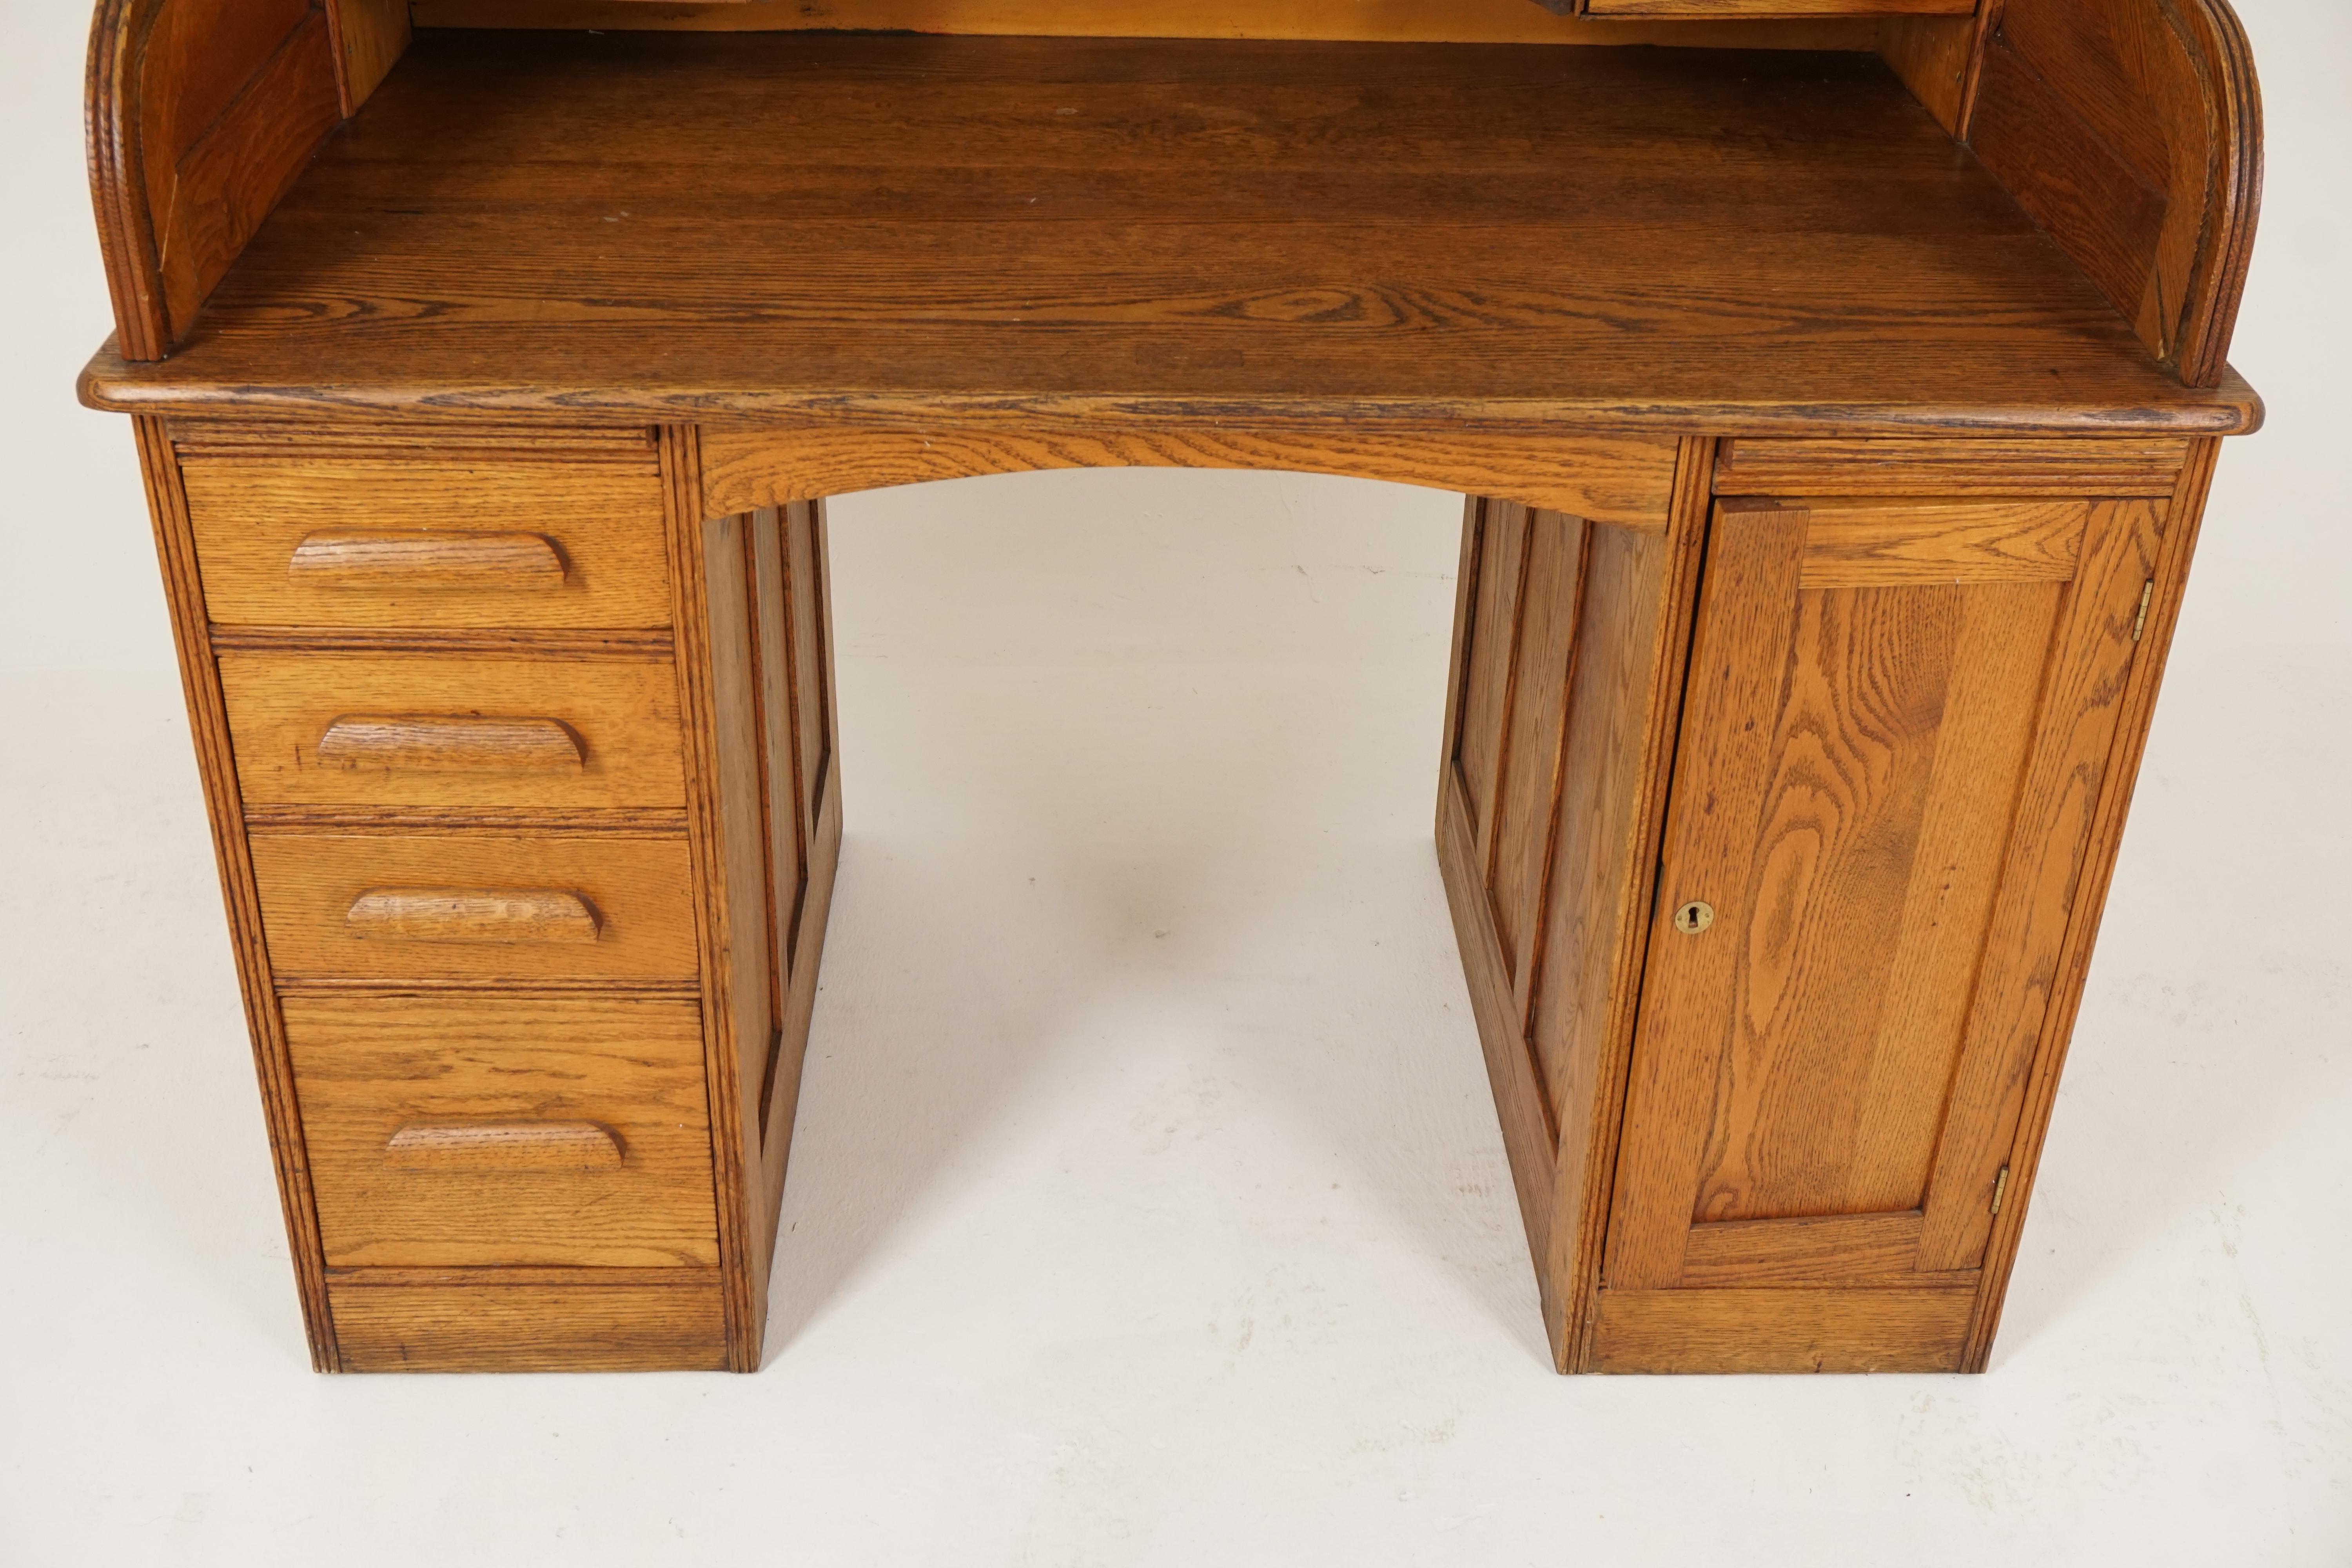 Early 20th Century Antique Oak Roll Top Desk, Double Pedestal, American 1900, B2515